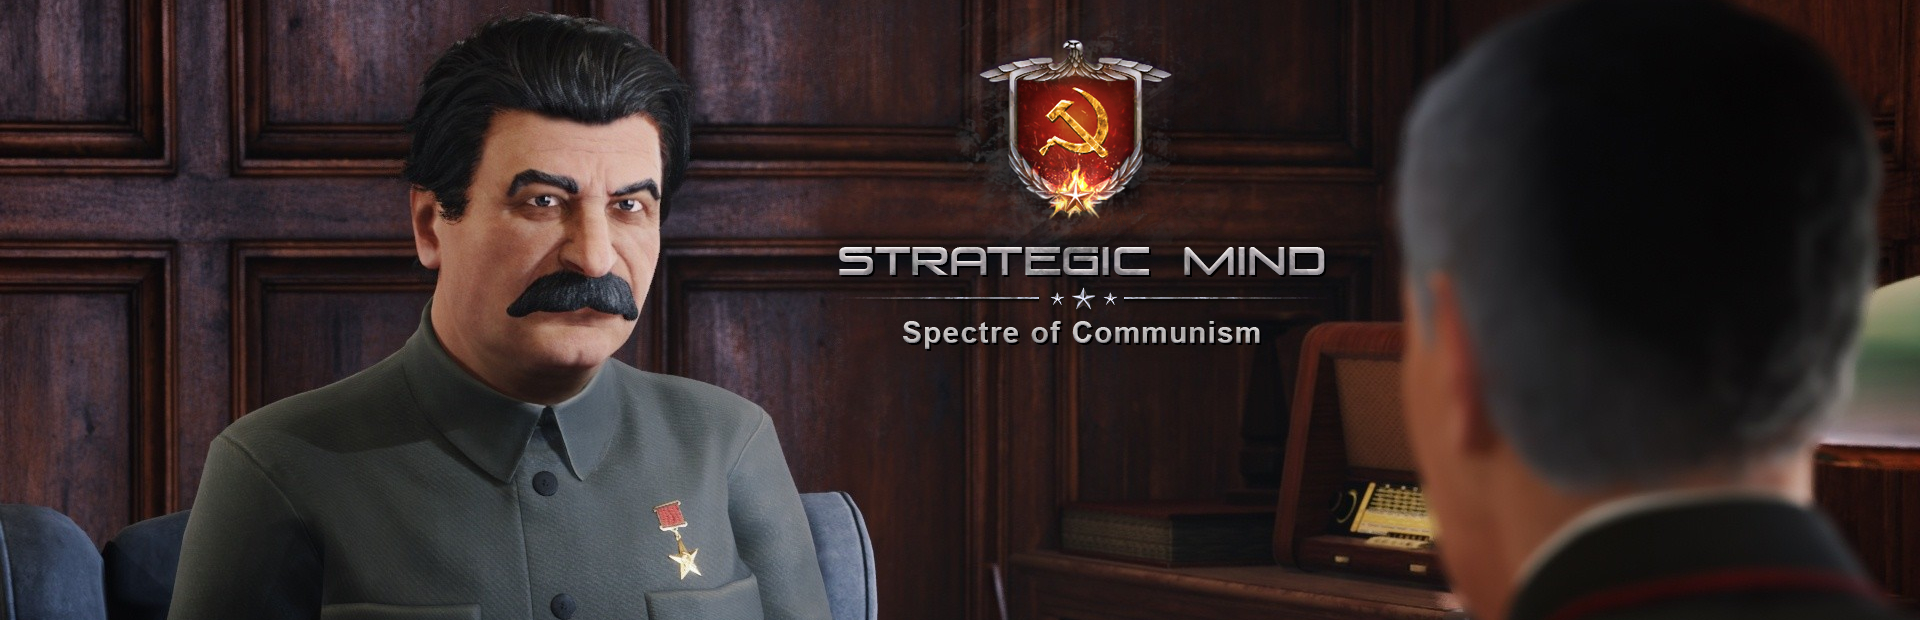 دانلود بازی Strategic Mind: Spectre of Communism برای پی سی | گیمباتو